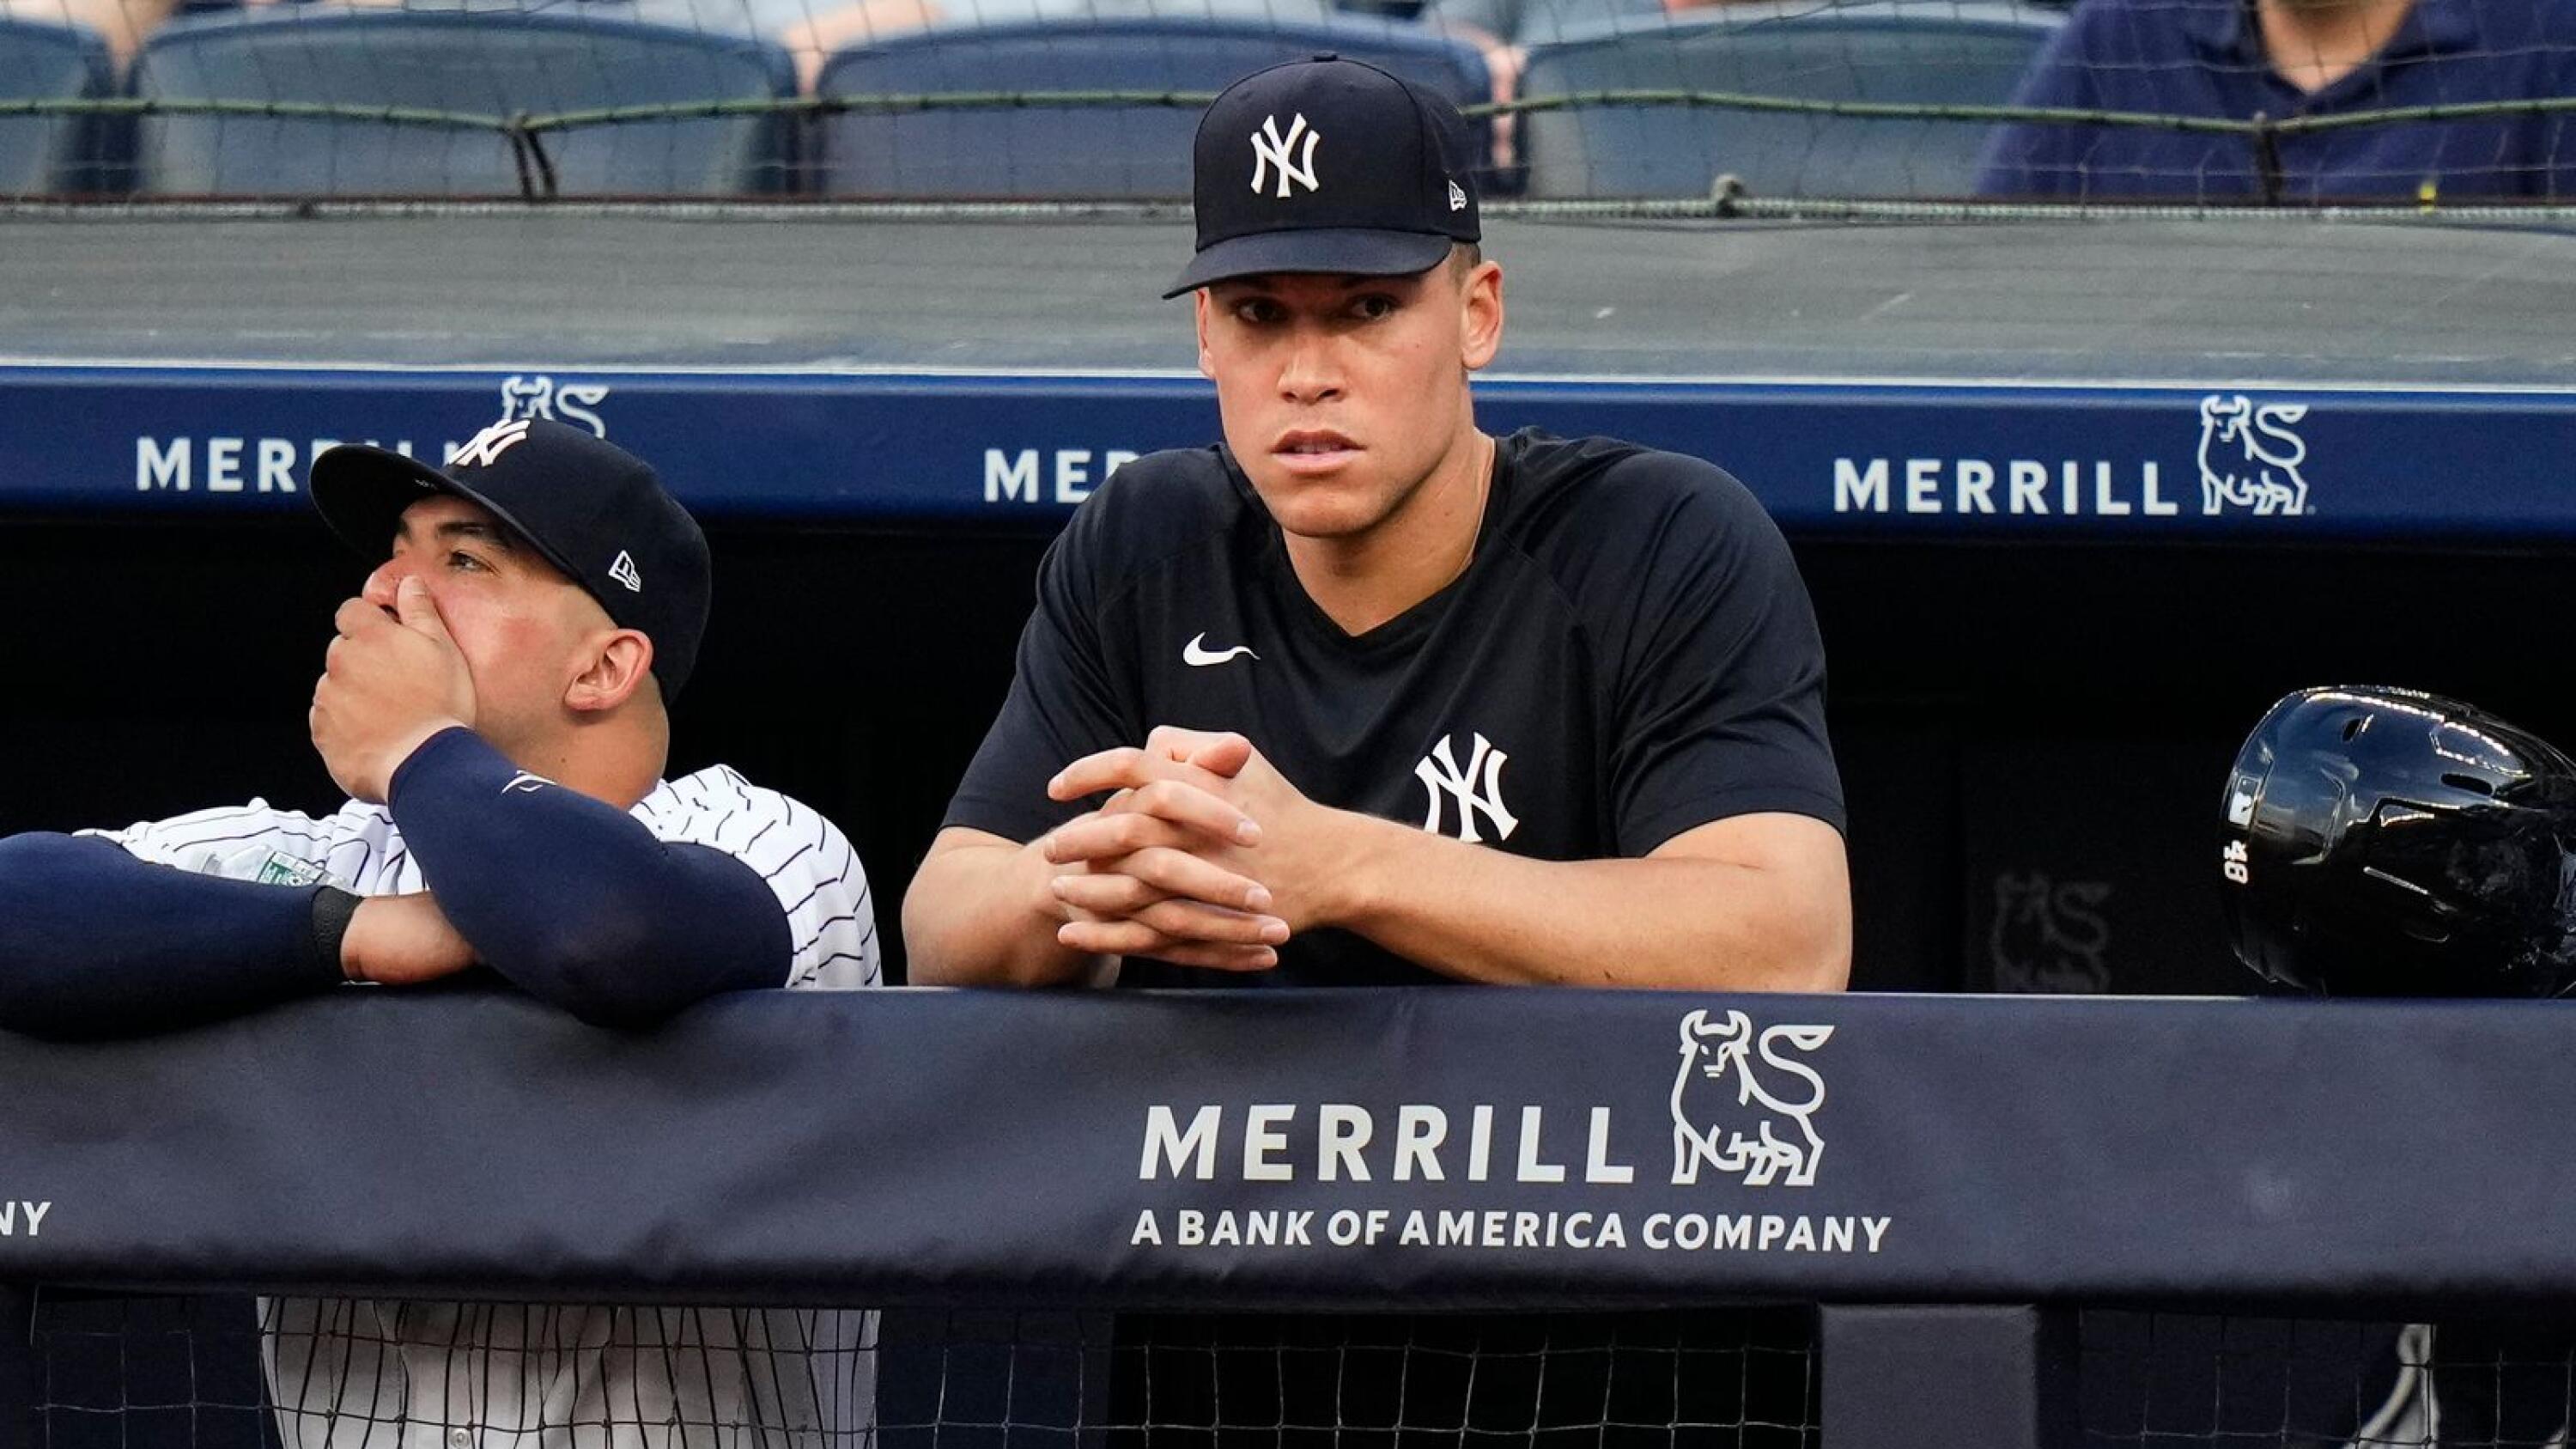 Yankees slugger Aaron Judge says focus is on winning